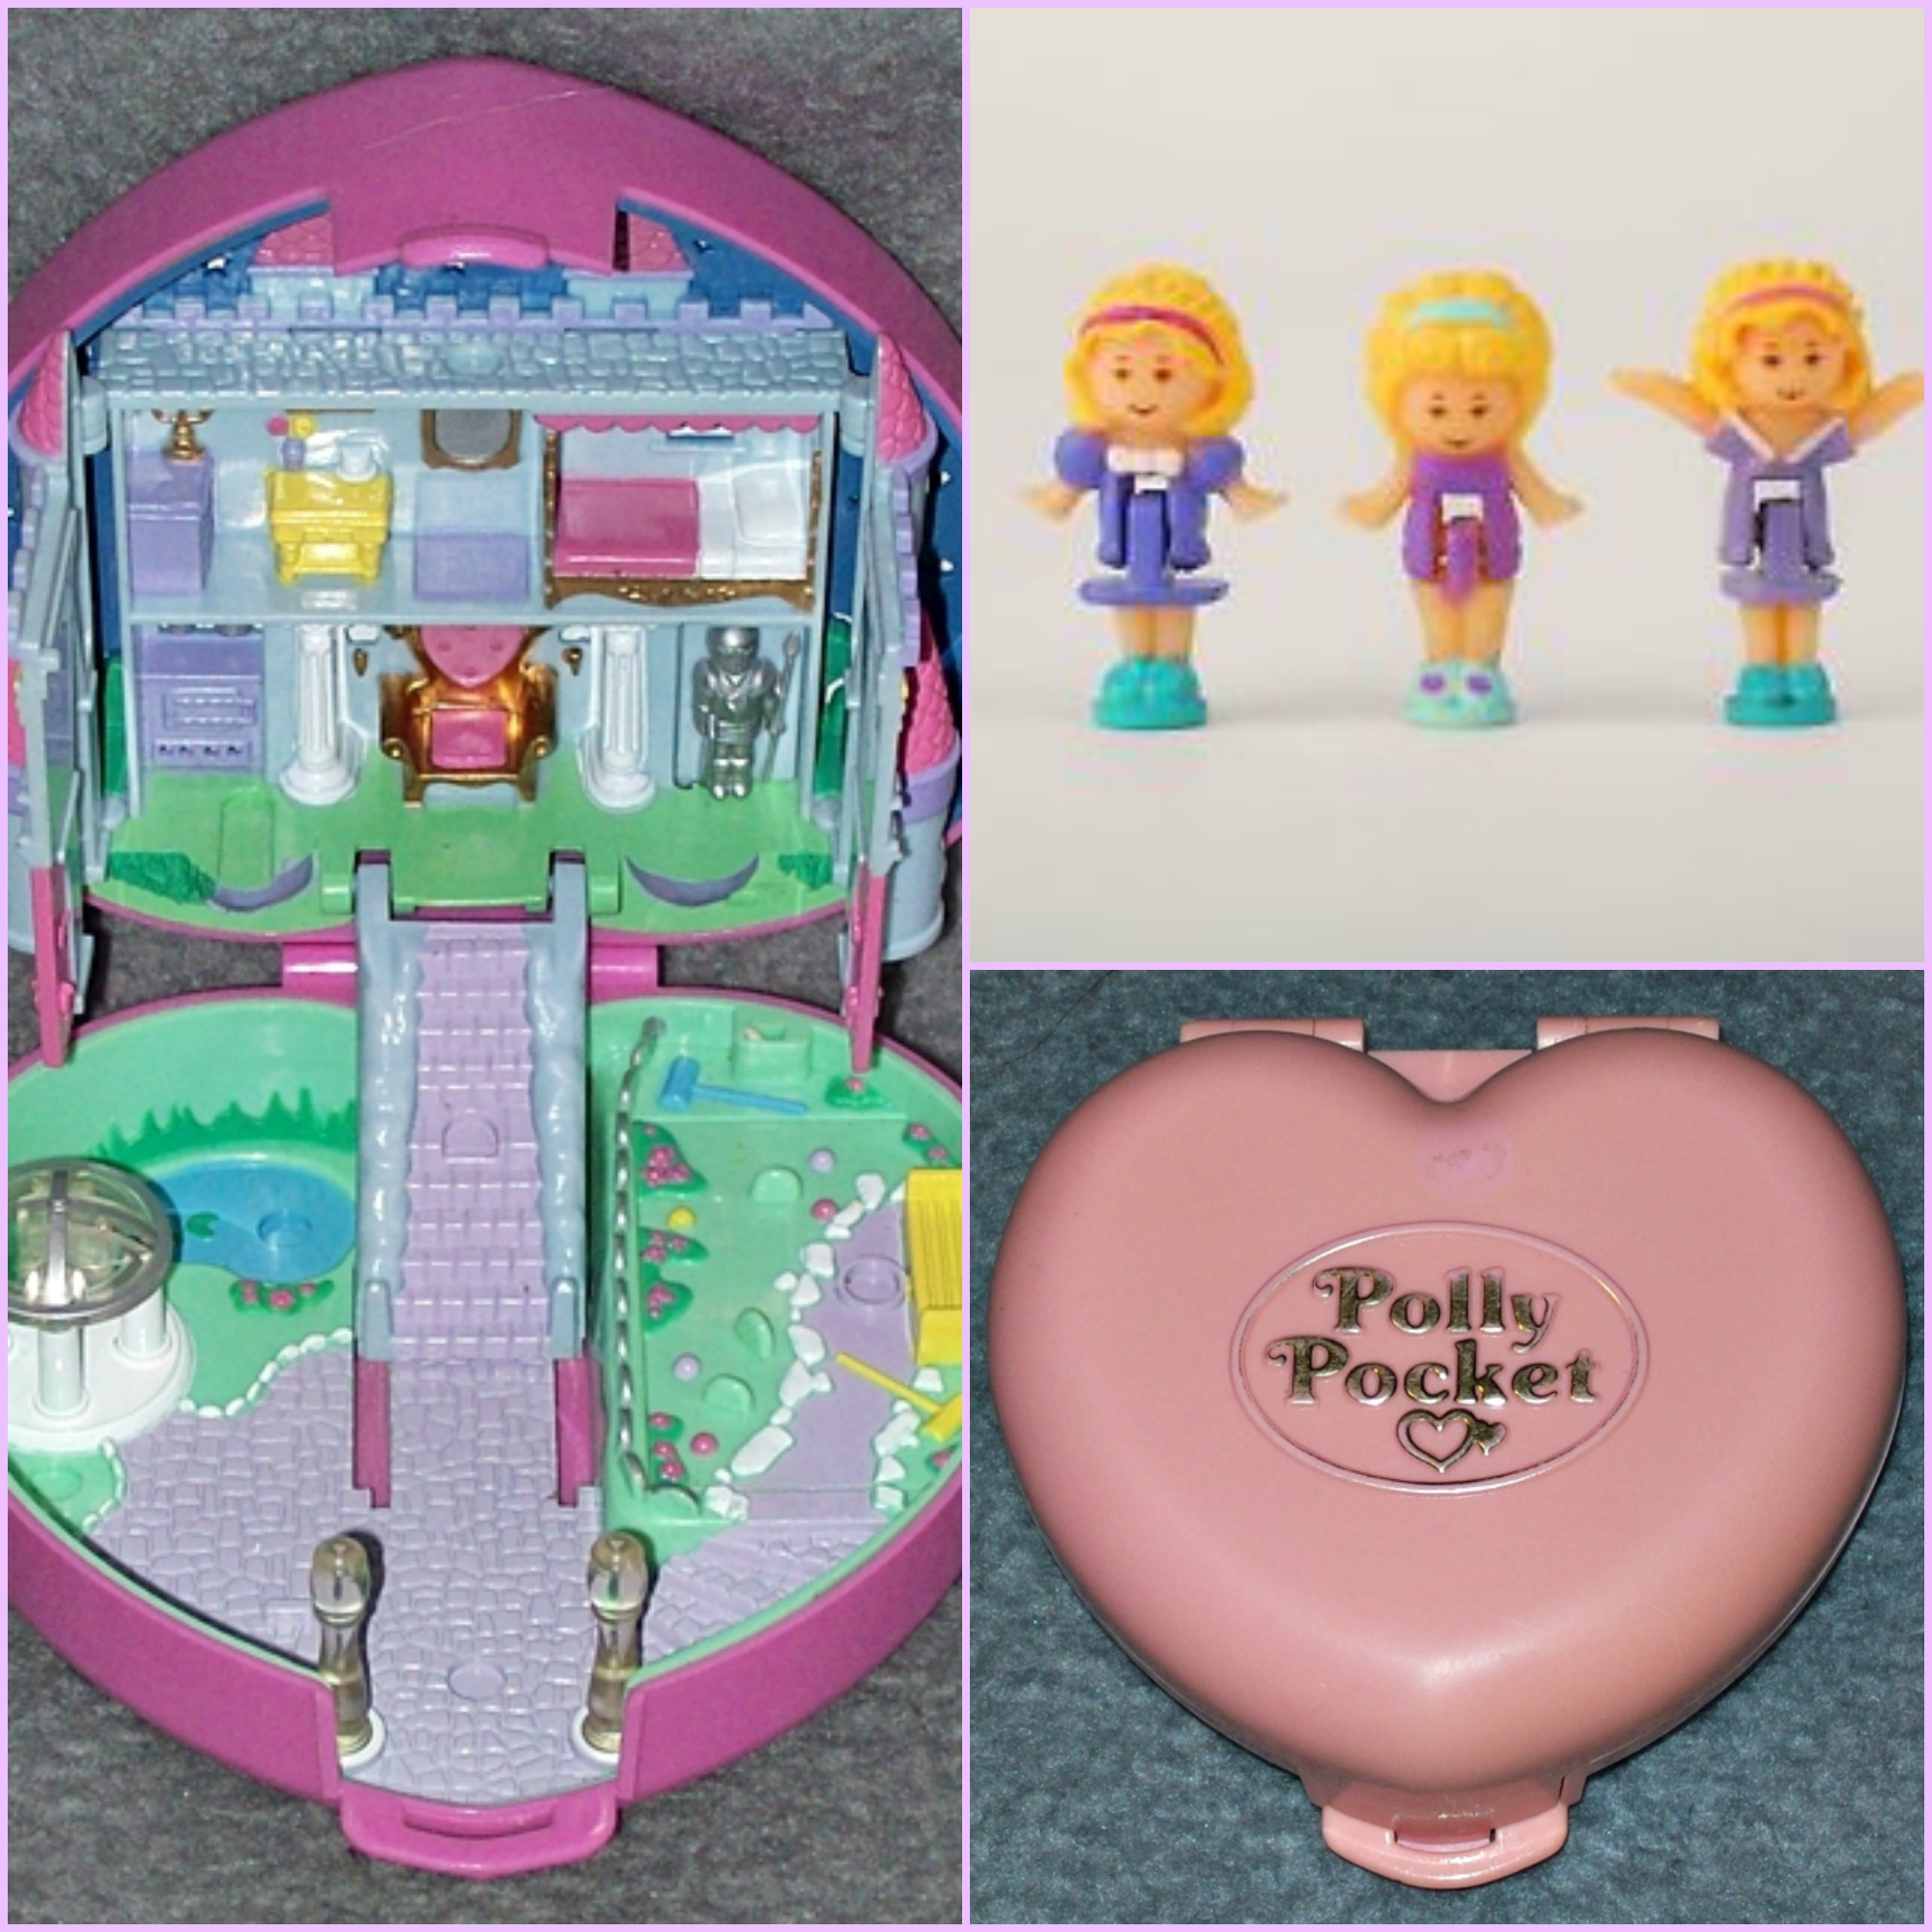 Weihnachtsgeschenke der Kinder der 90er - Polly Pocket